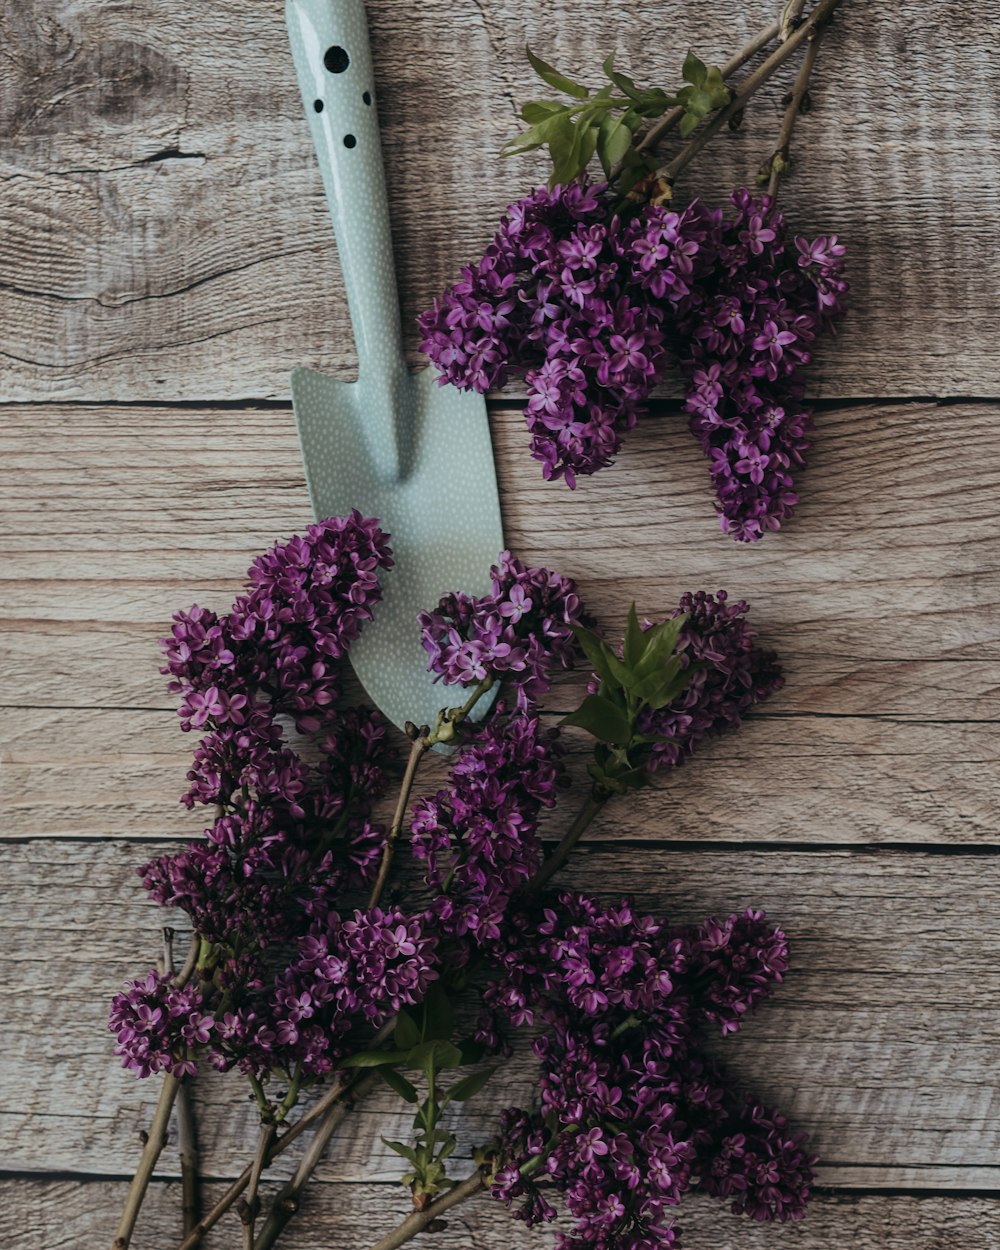 Un couteau et des fleurs violettes sur une table